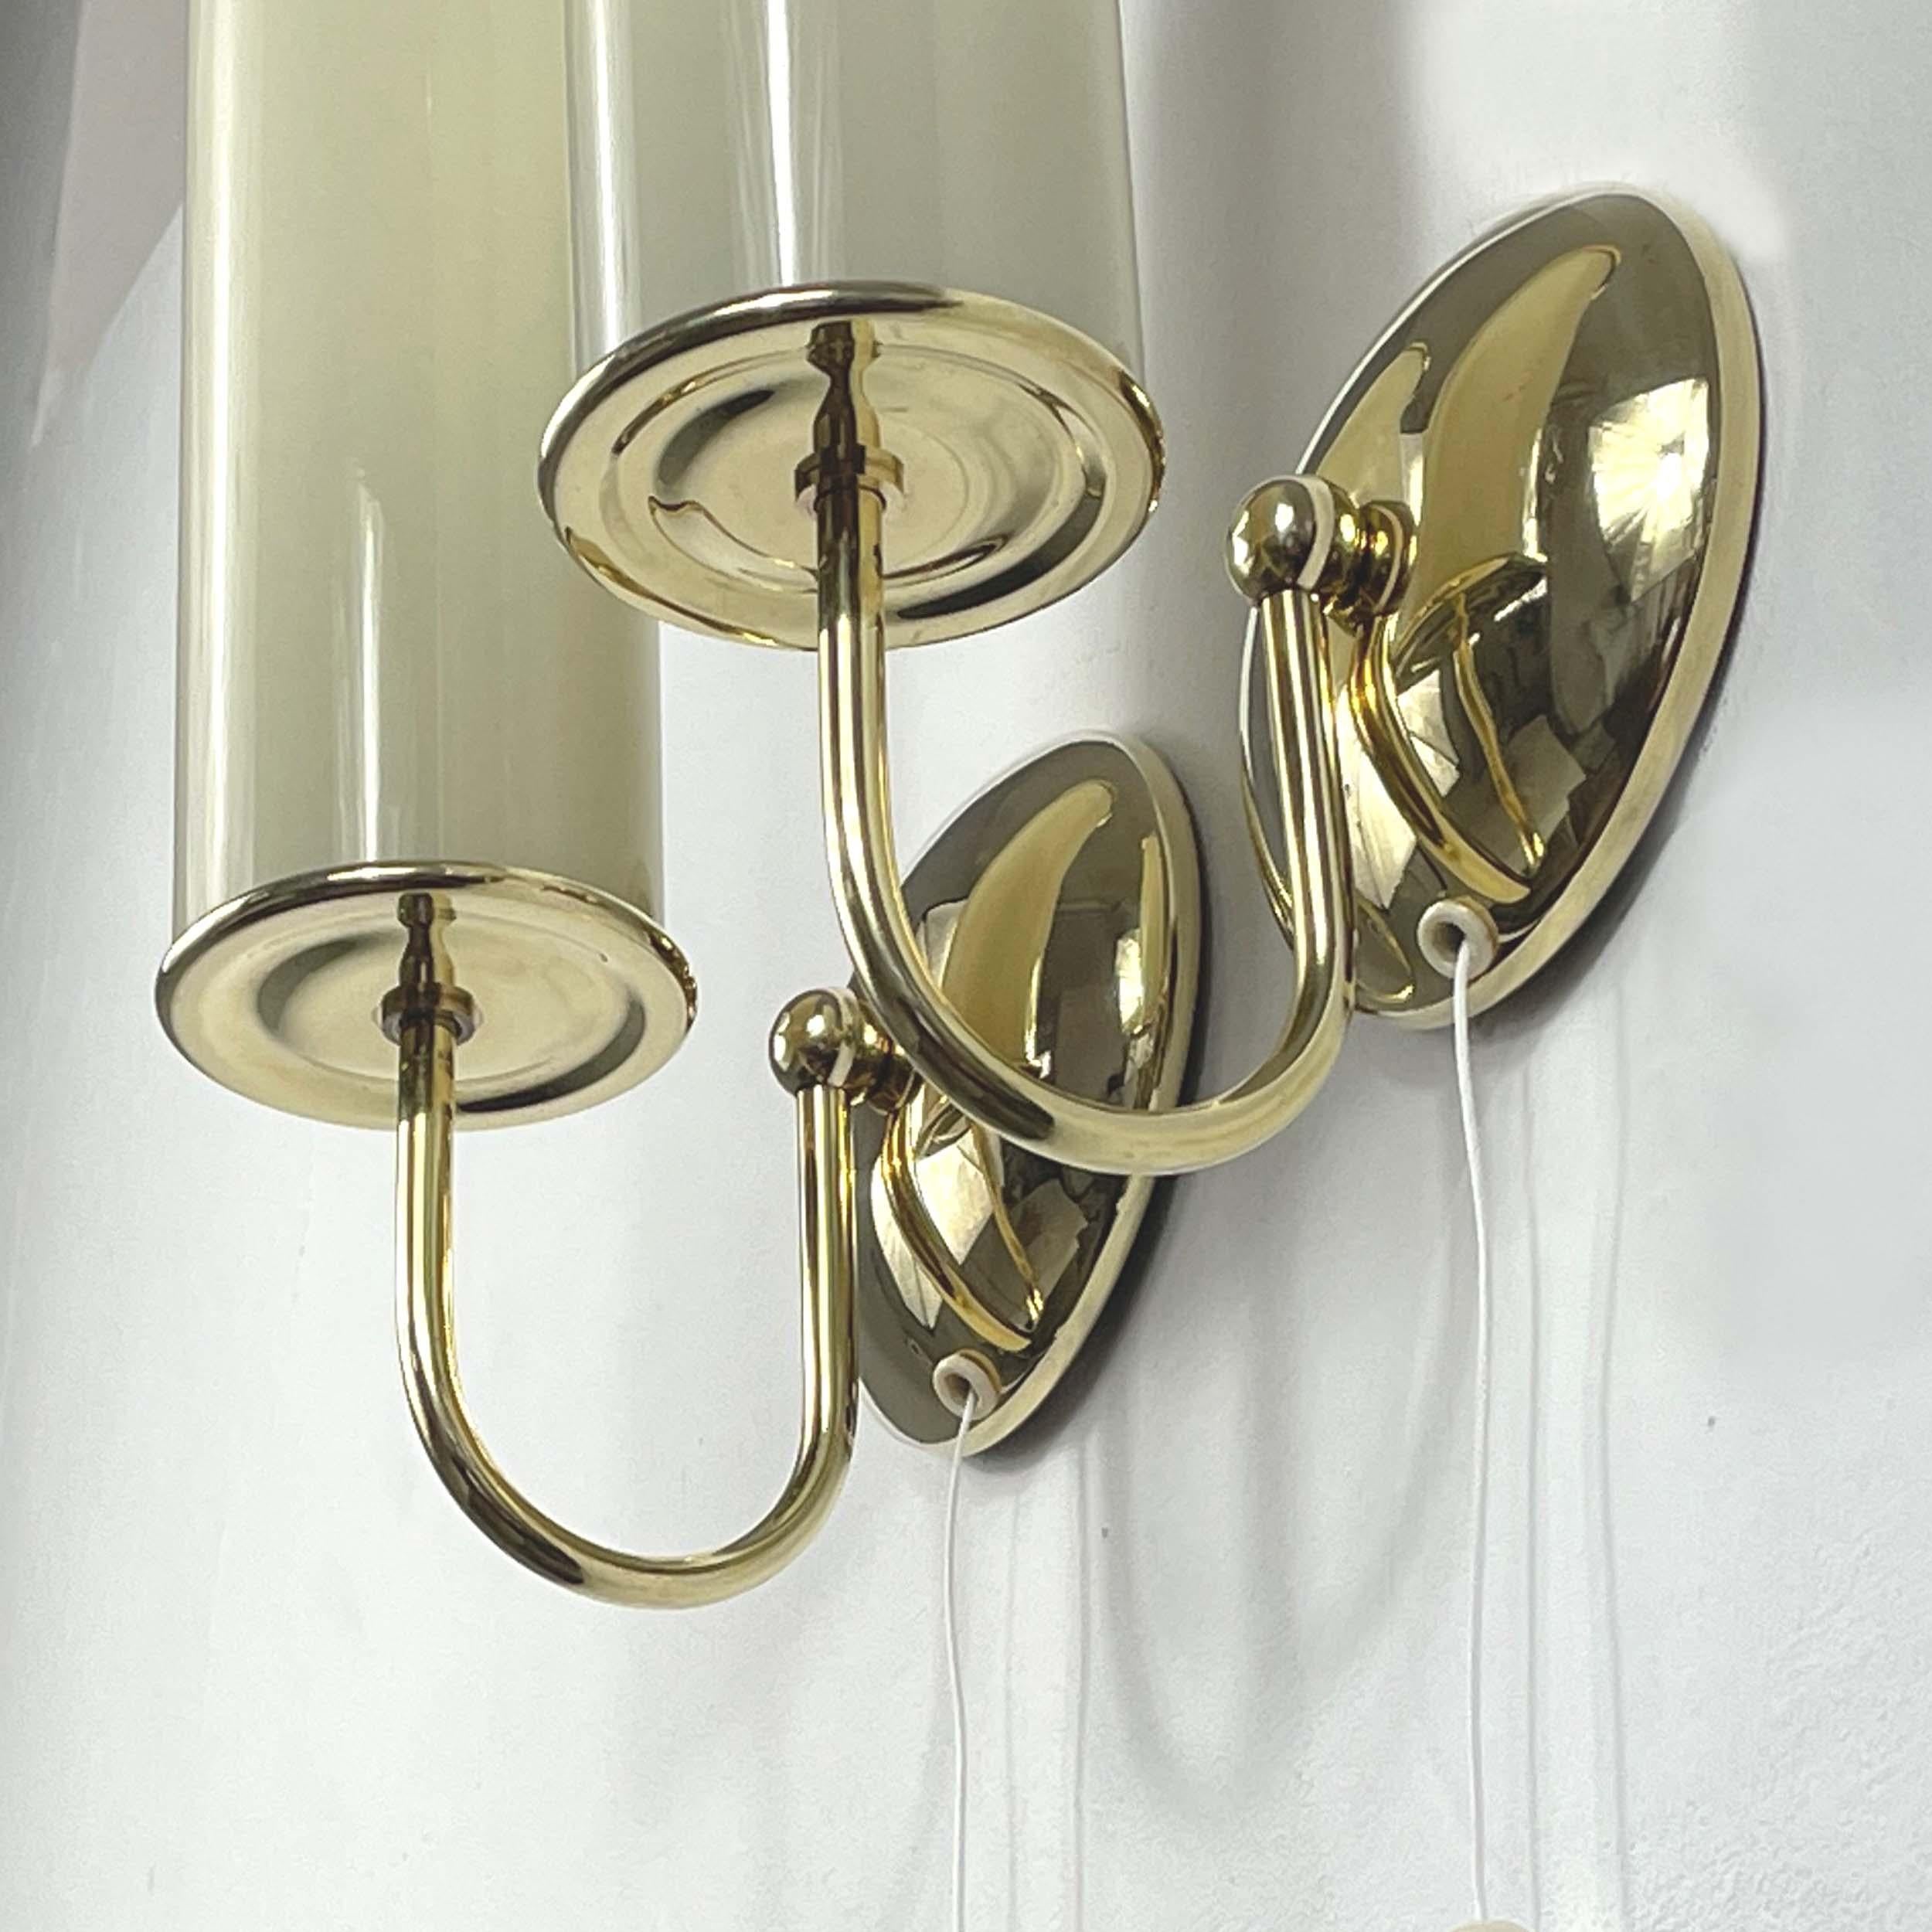 Art Deco Tubular Opaline Glass & Brass Sconces, Germany 1930s For Sale 6